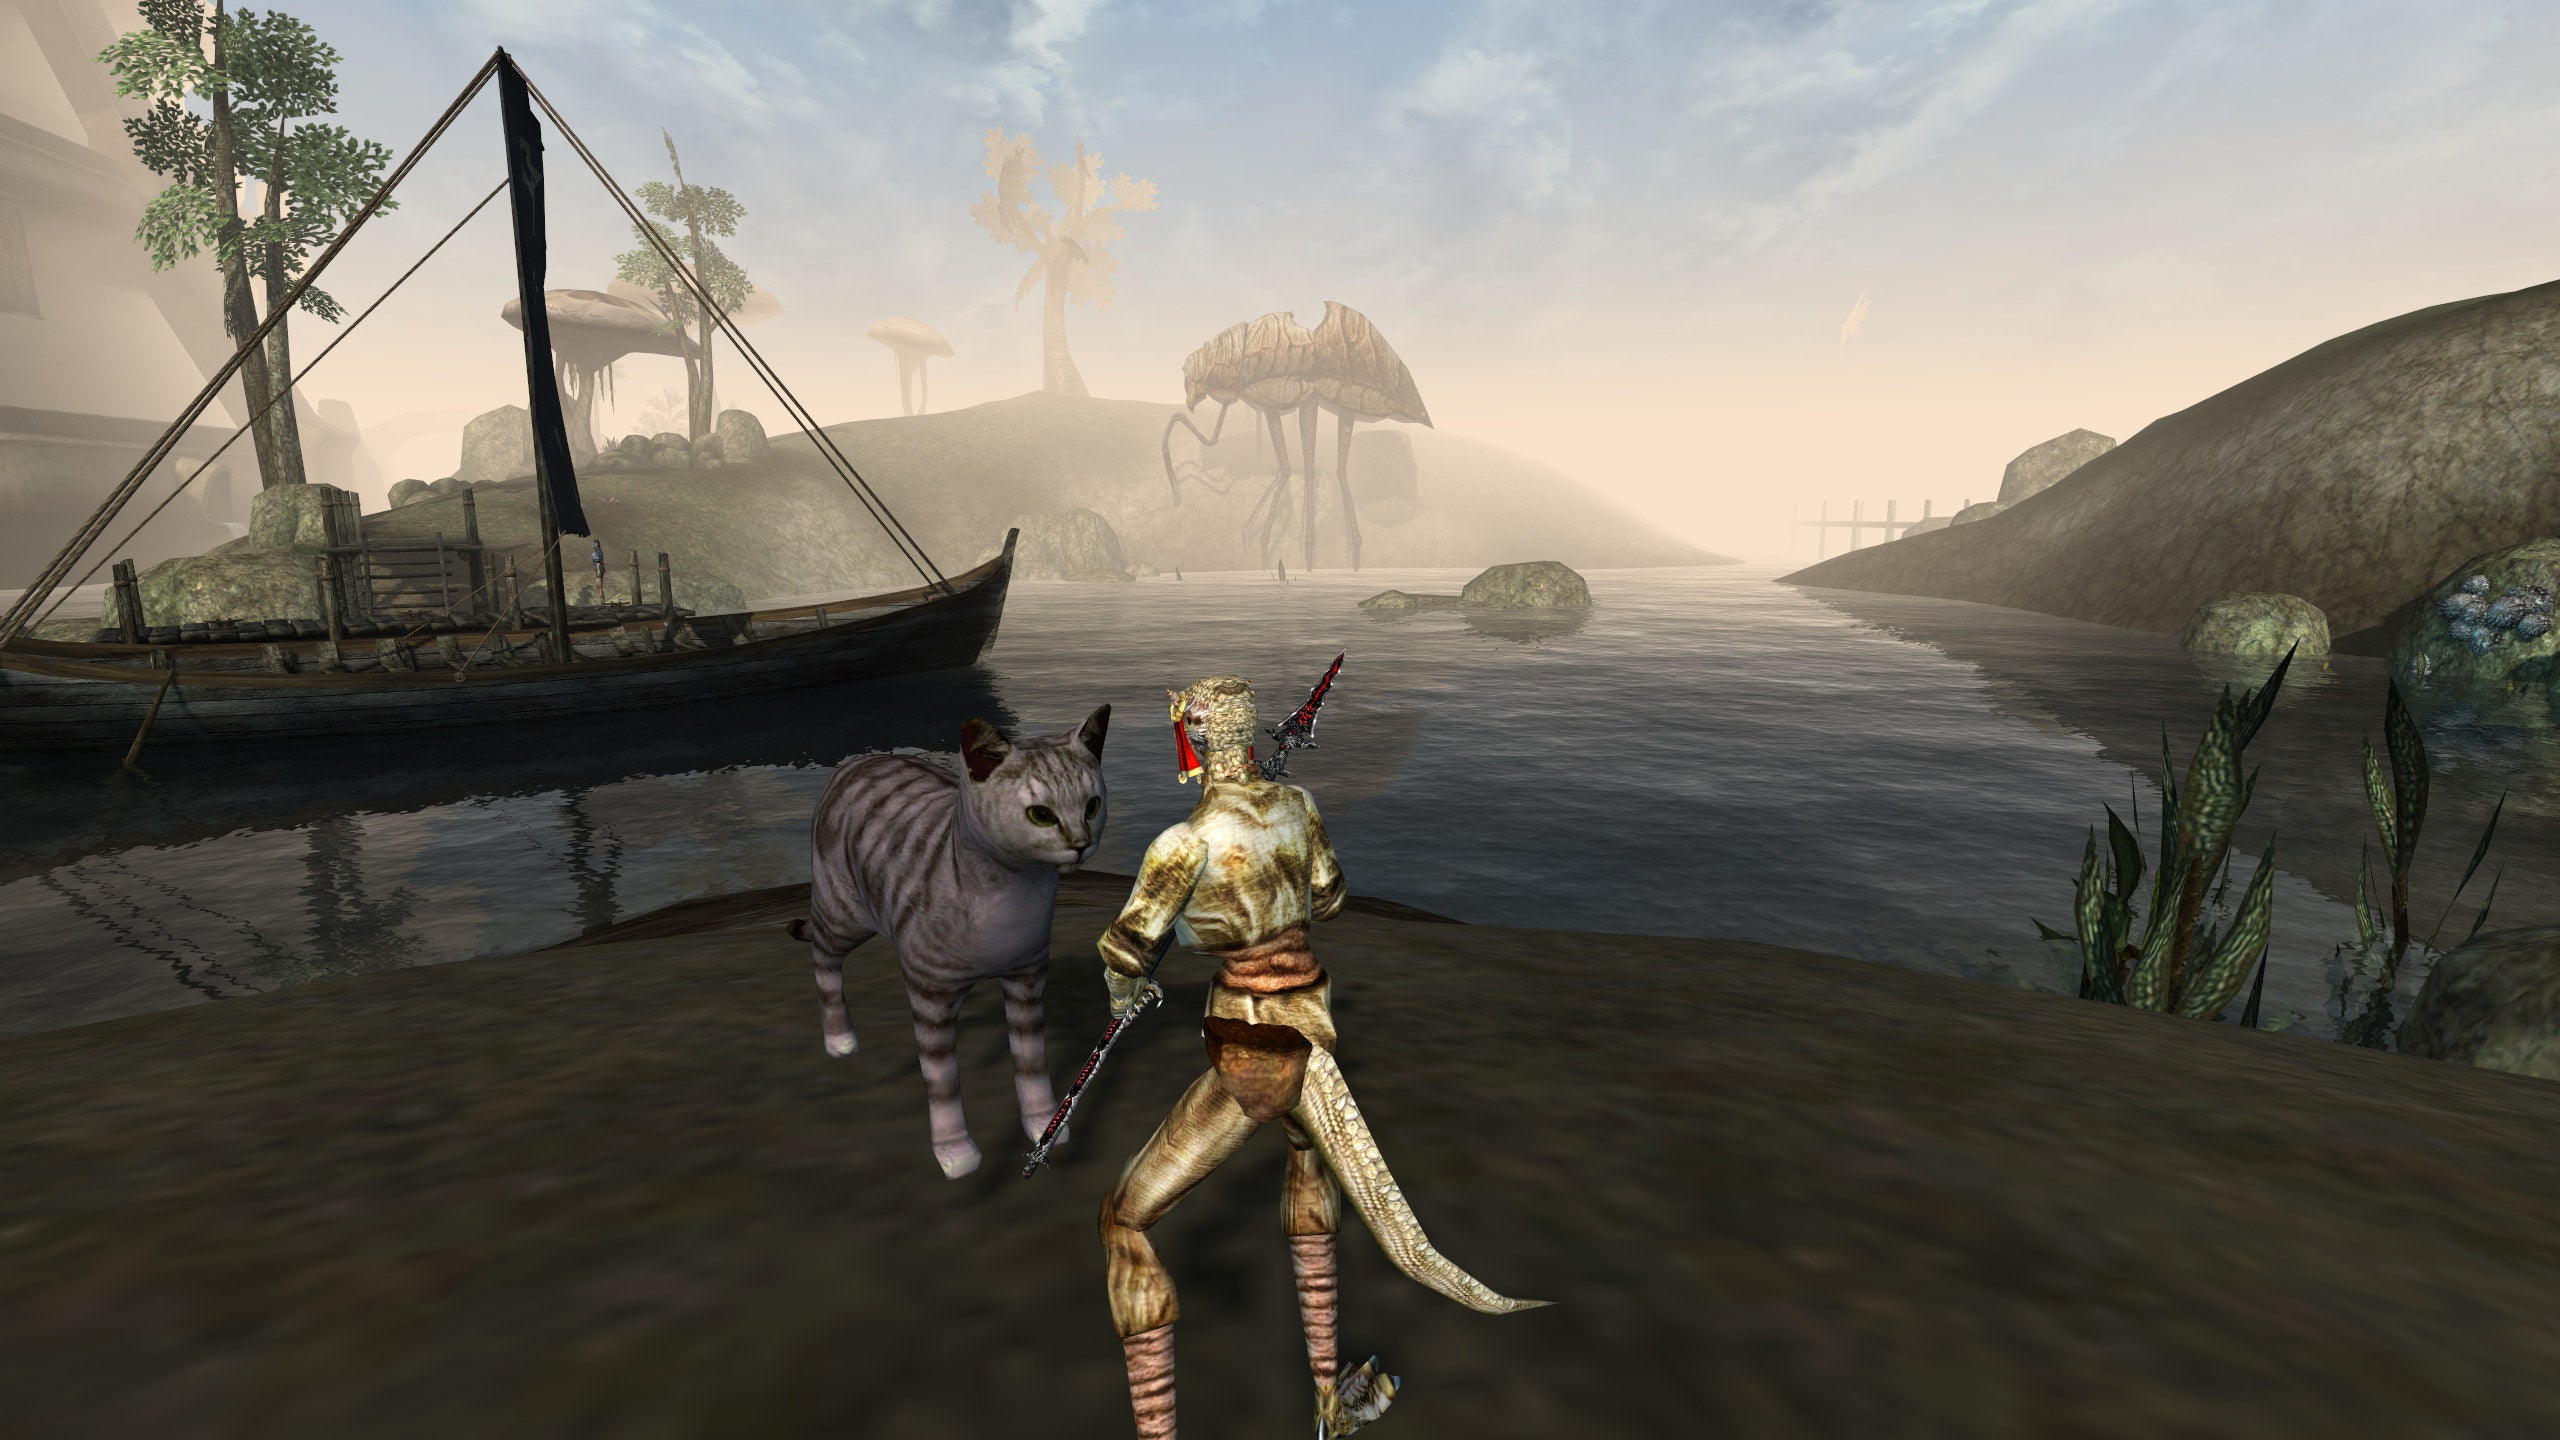 Segredos da captura de tela: fotografando Stripes, o gato da família em Morrowind